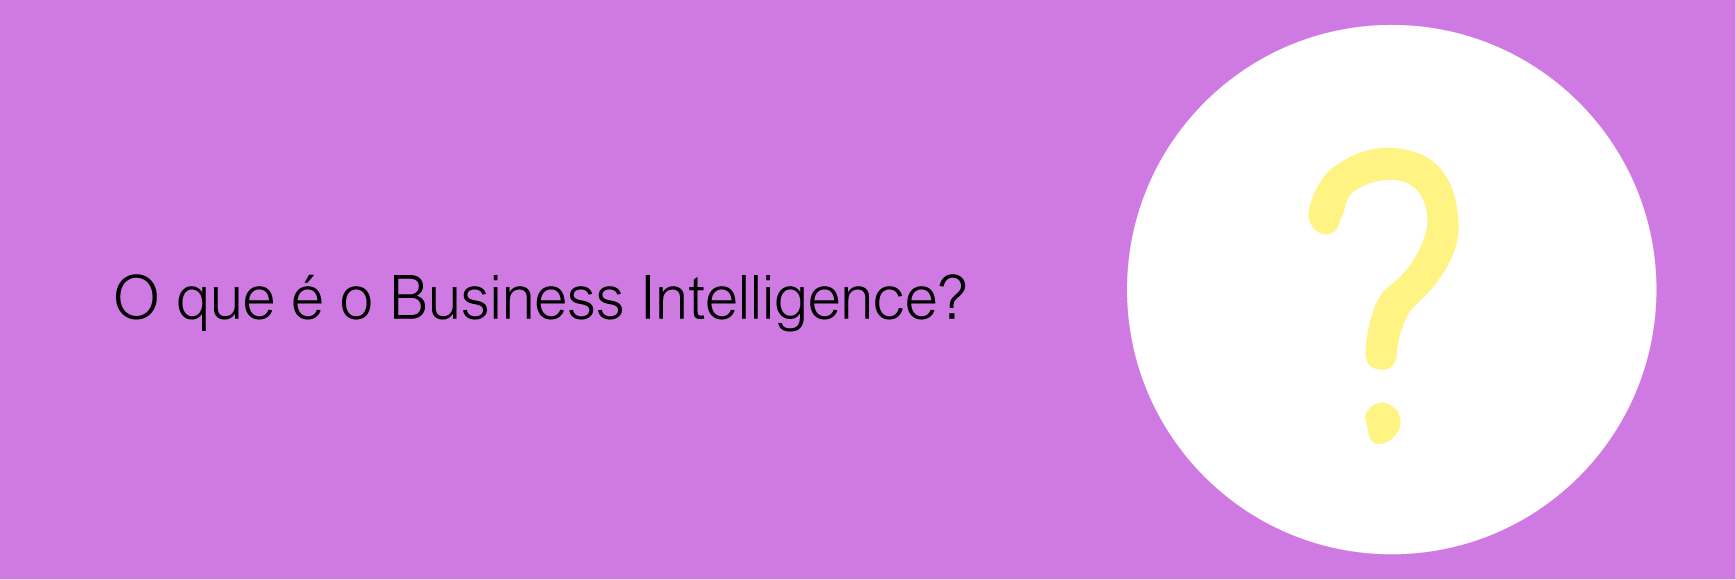 O que é o Business Intelligence?